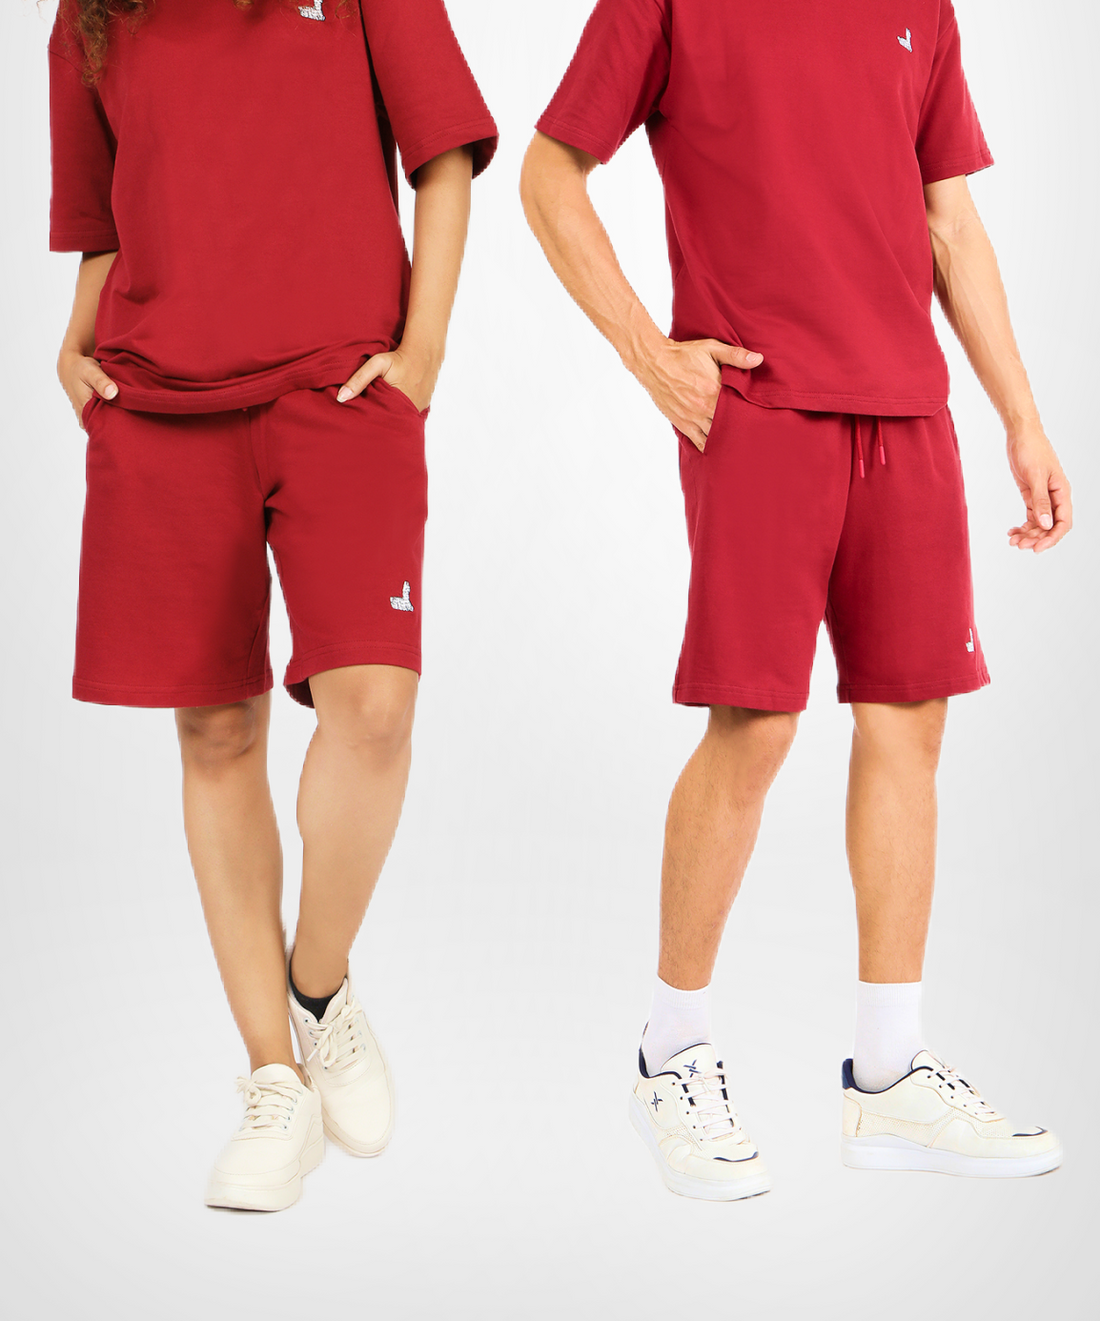 Red Hot Unisex Shorts